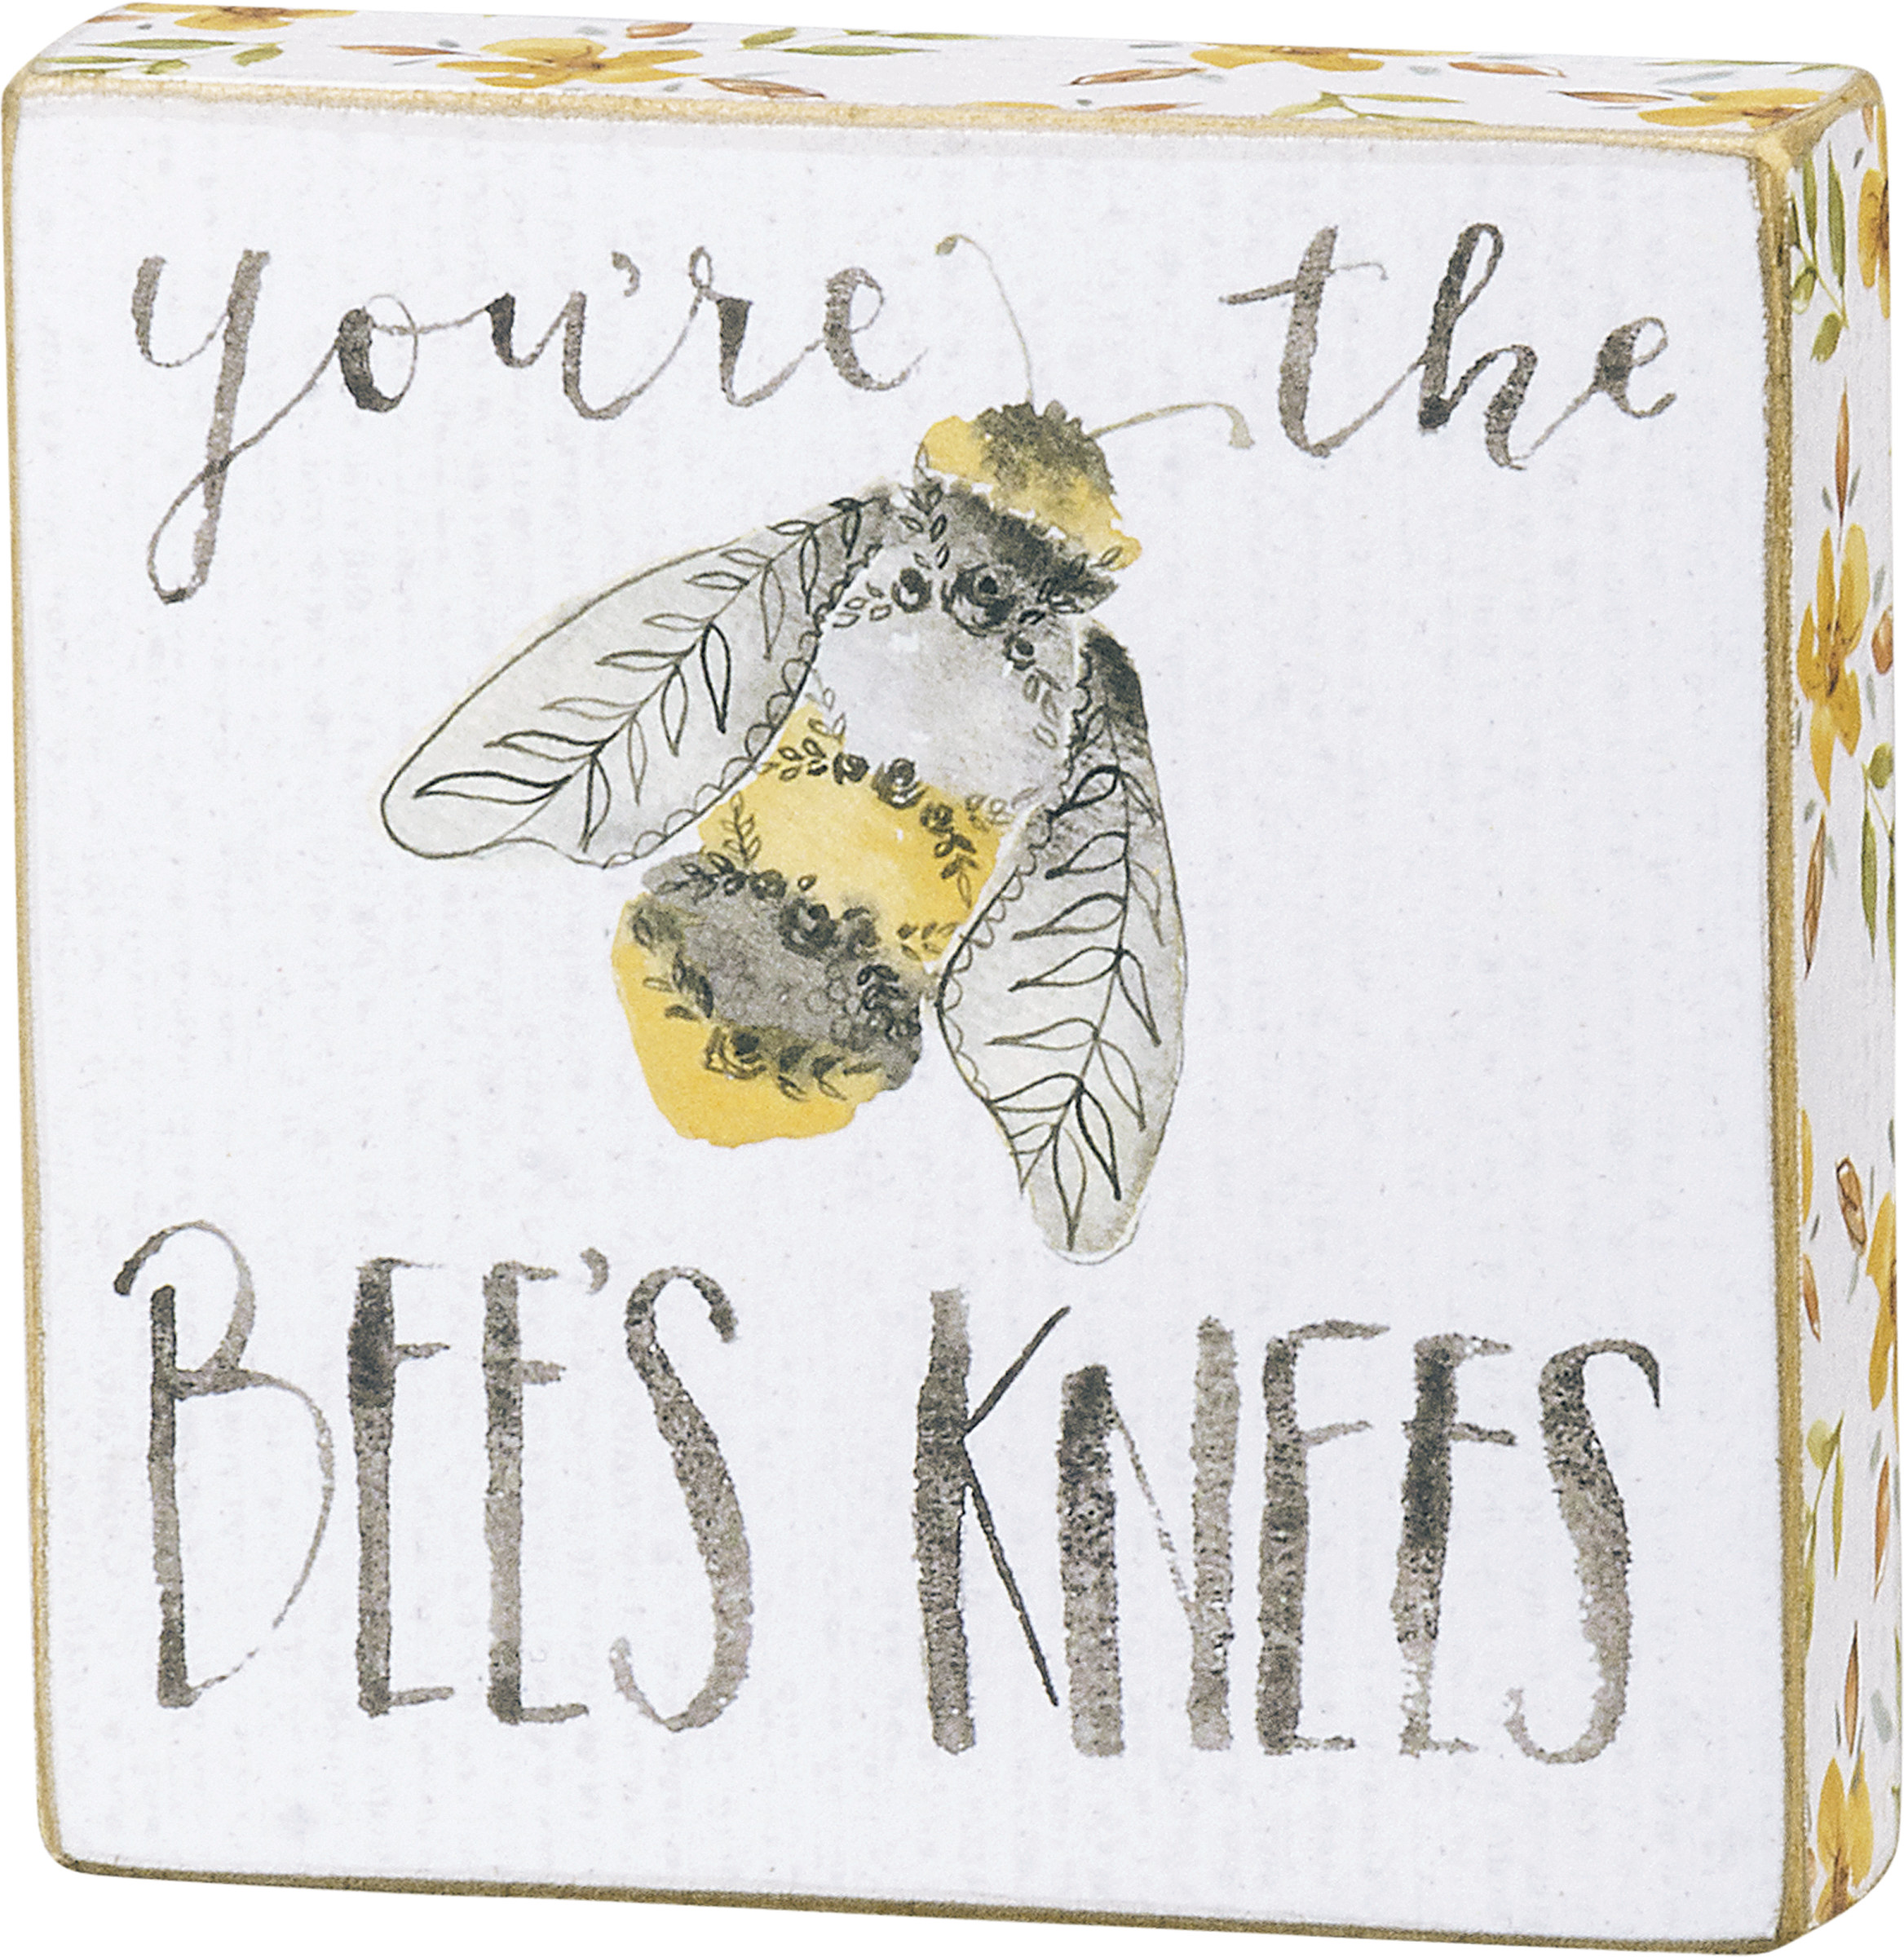 Bee's Knees